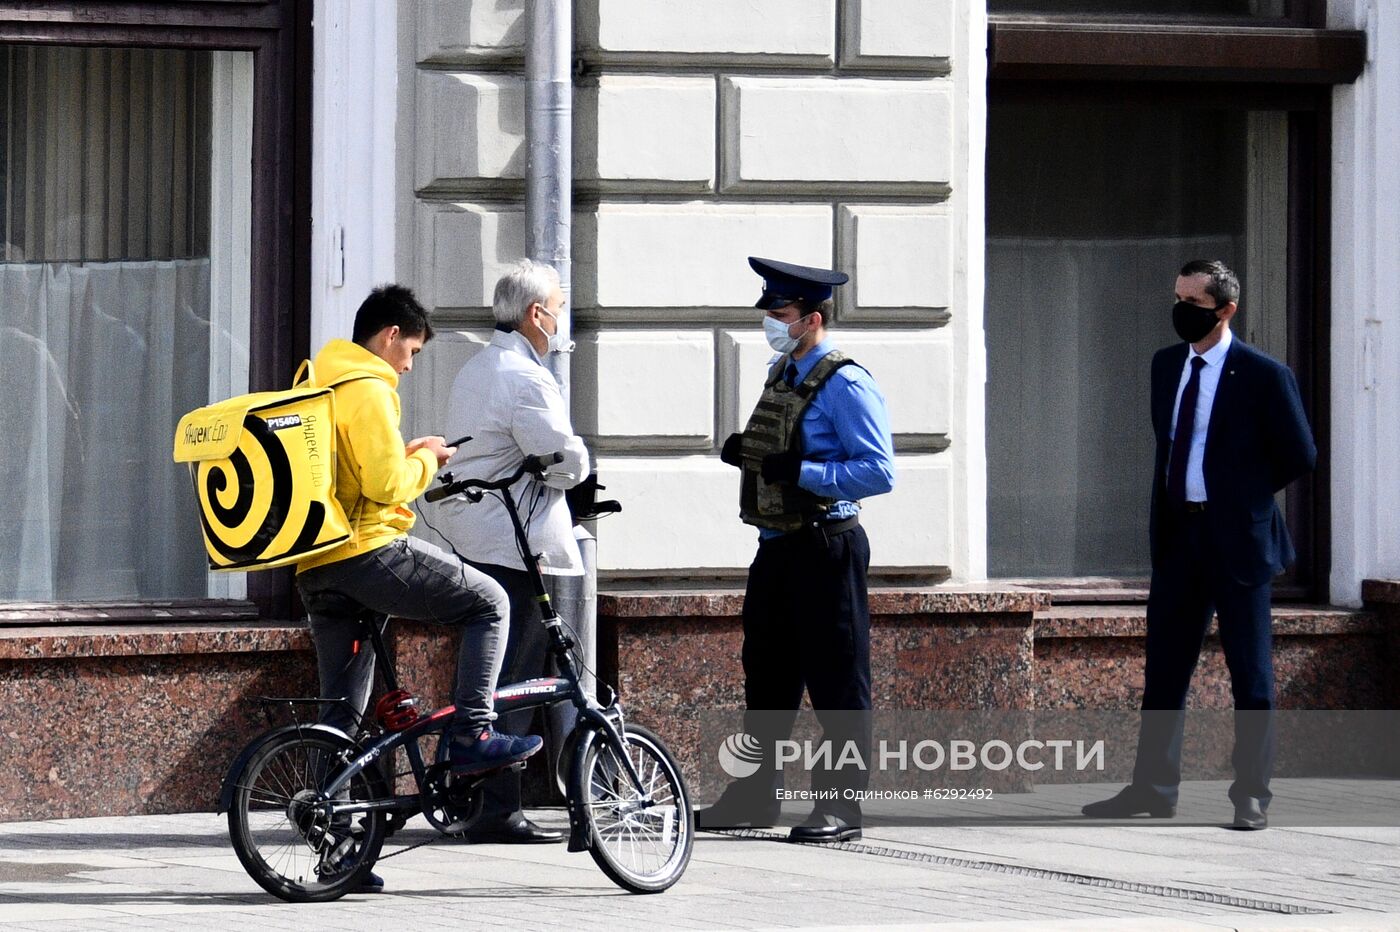 В центре Москвы найден подозрительный предмет